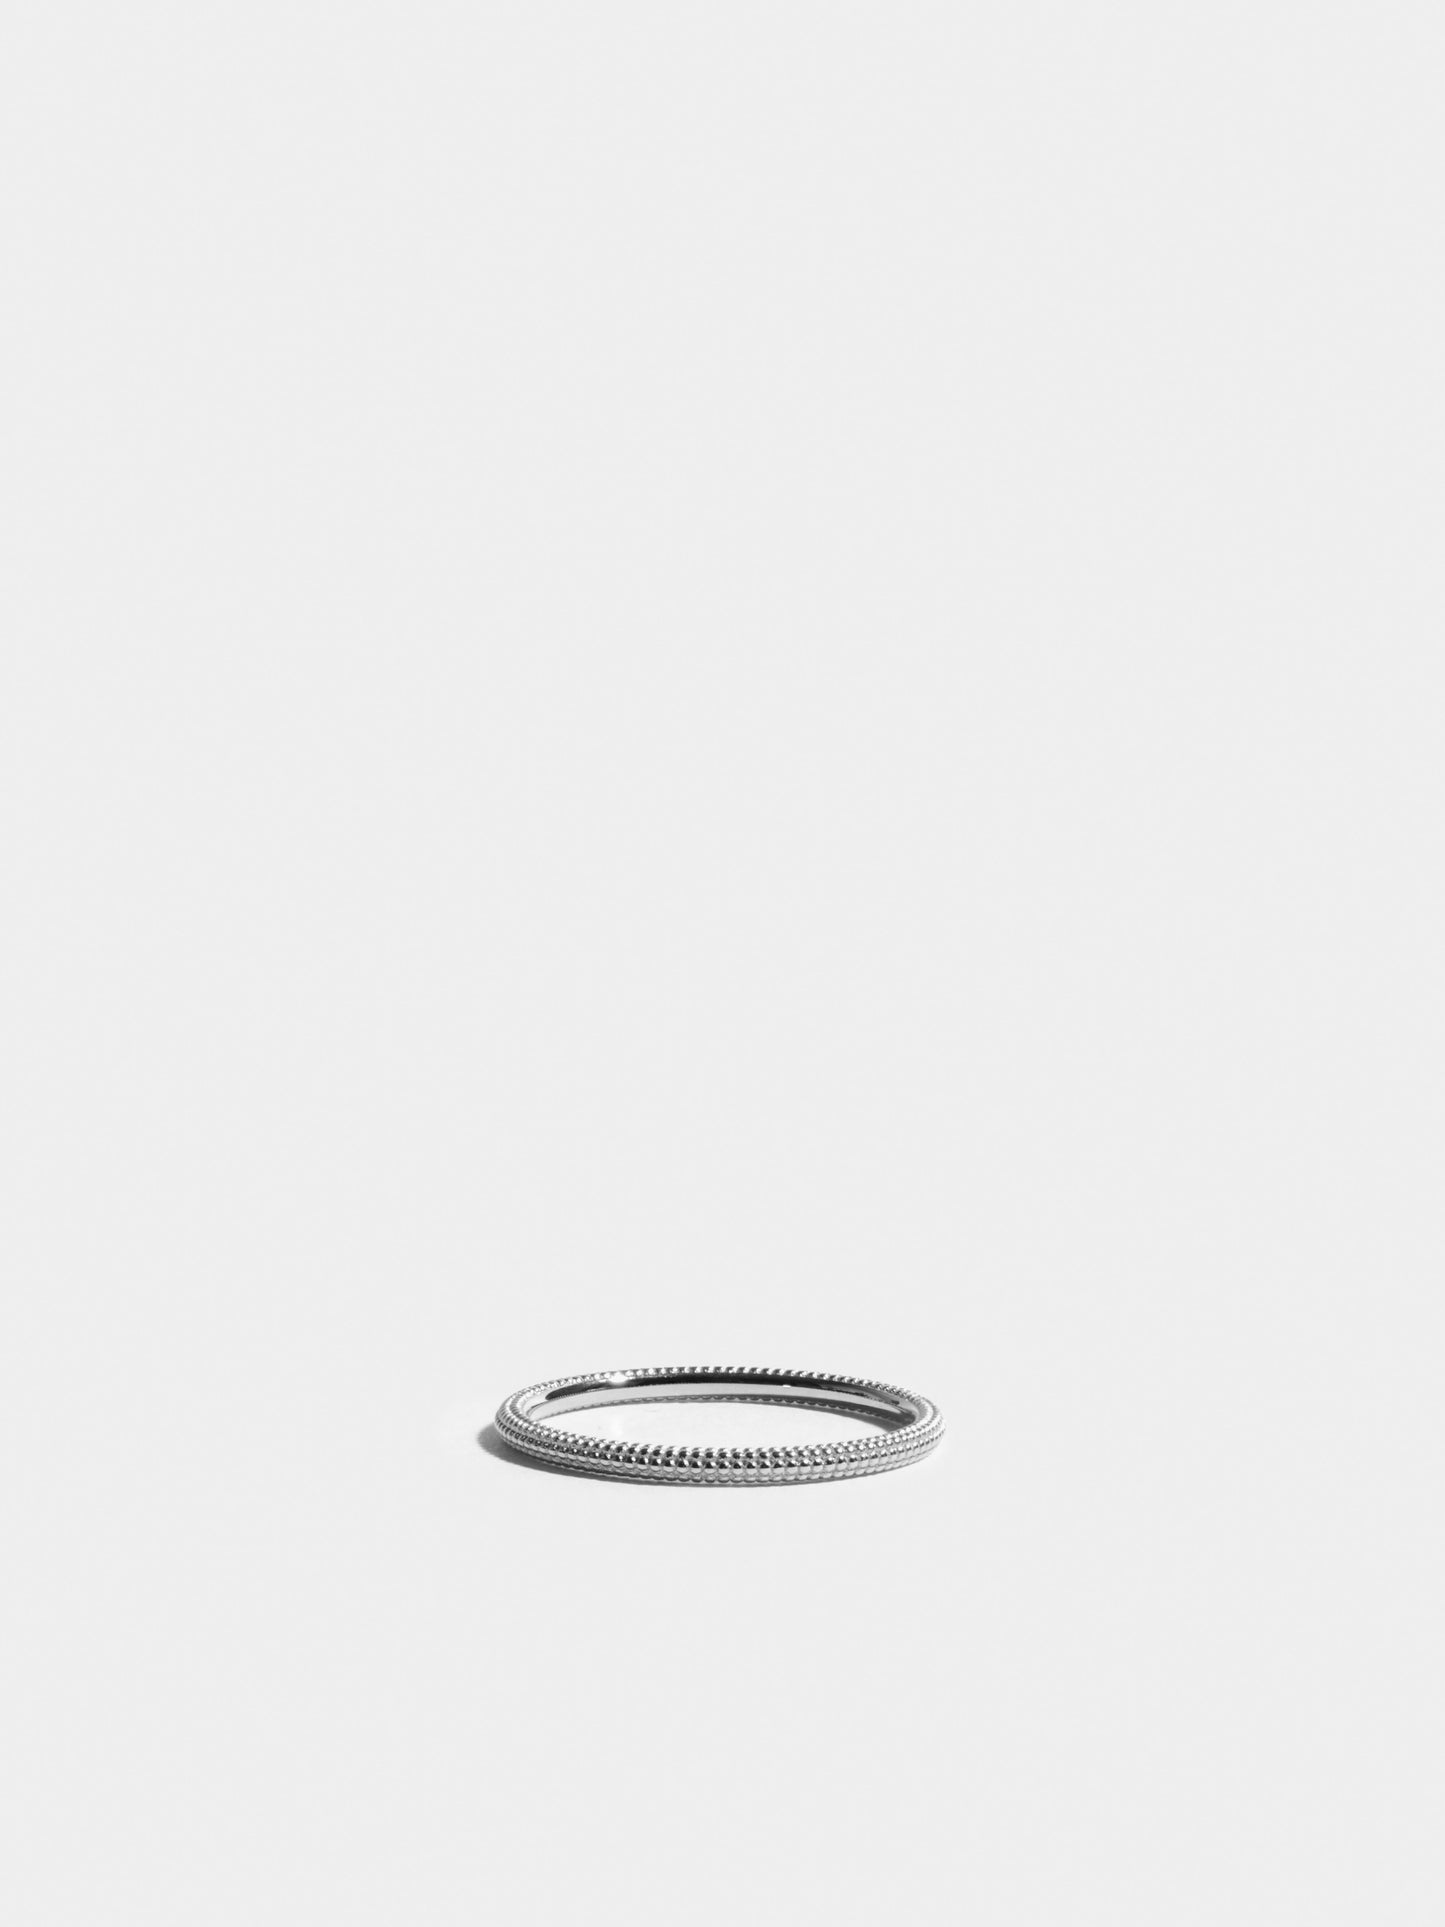 Fair trade Ring: Anagramme “millegrains” Ring aus Weissgold, liegend